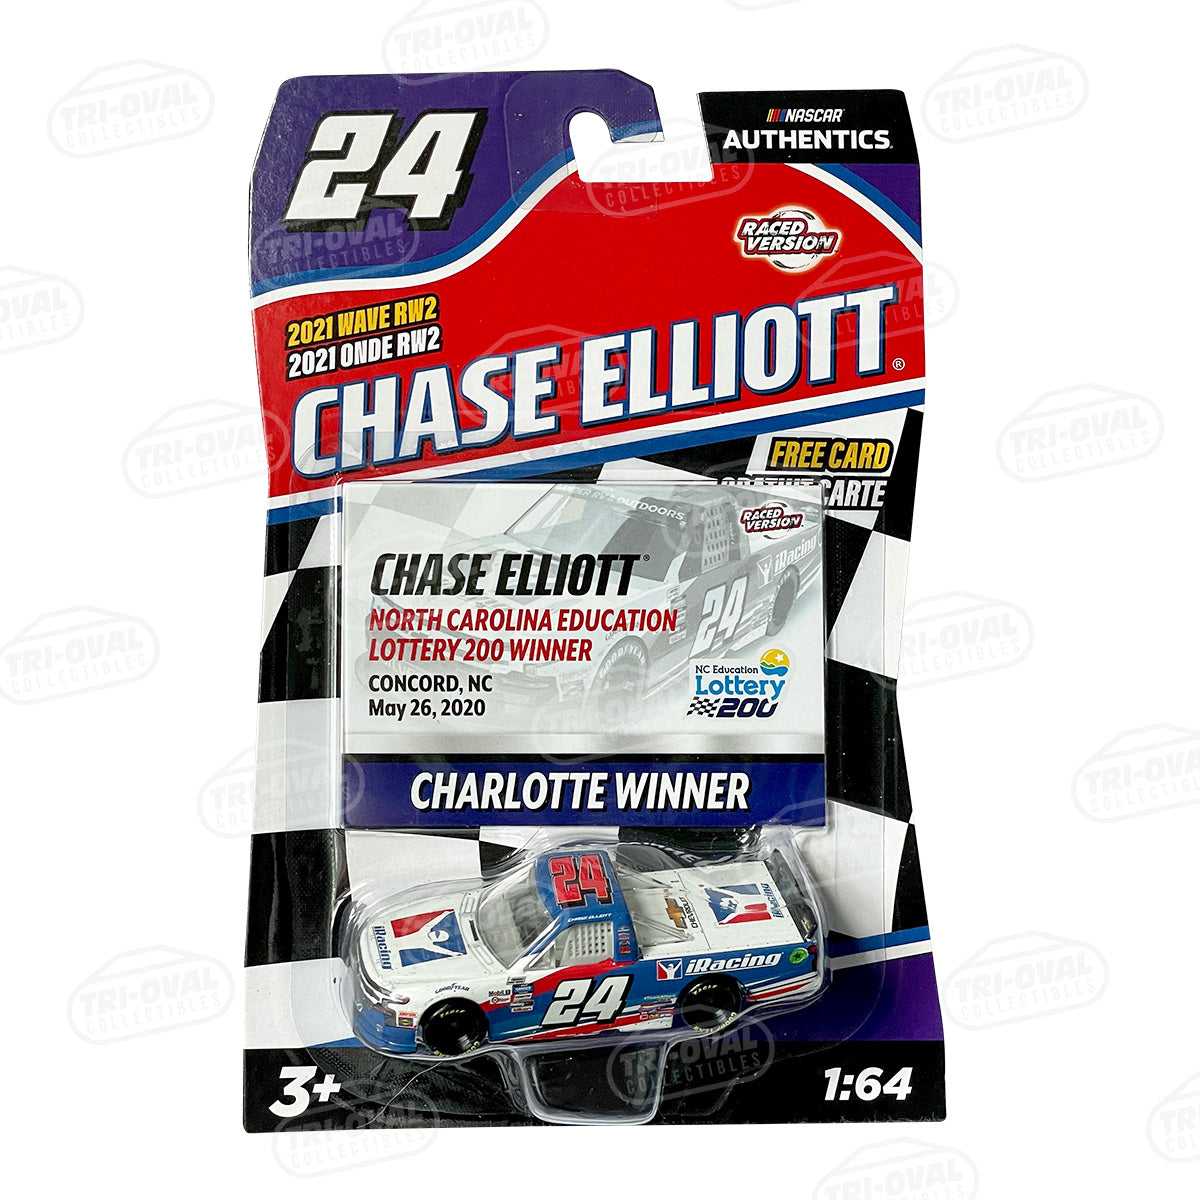 Chase Elliott 2021 Wave RW2 NASCAR Authentics 1:64 Die-cast